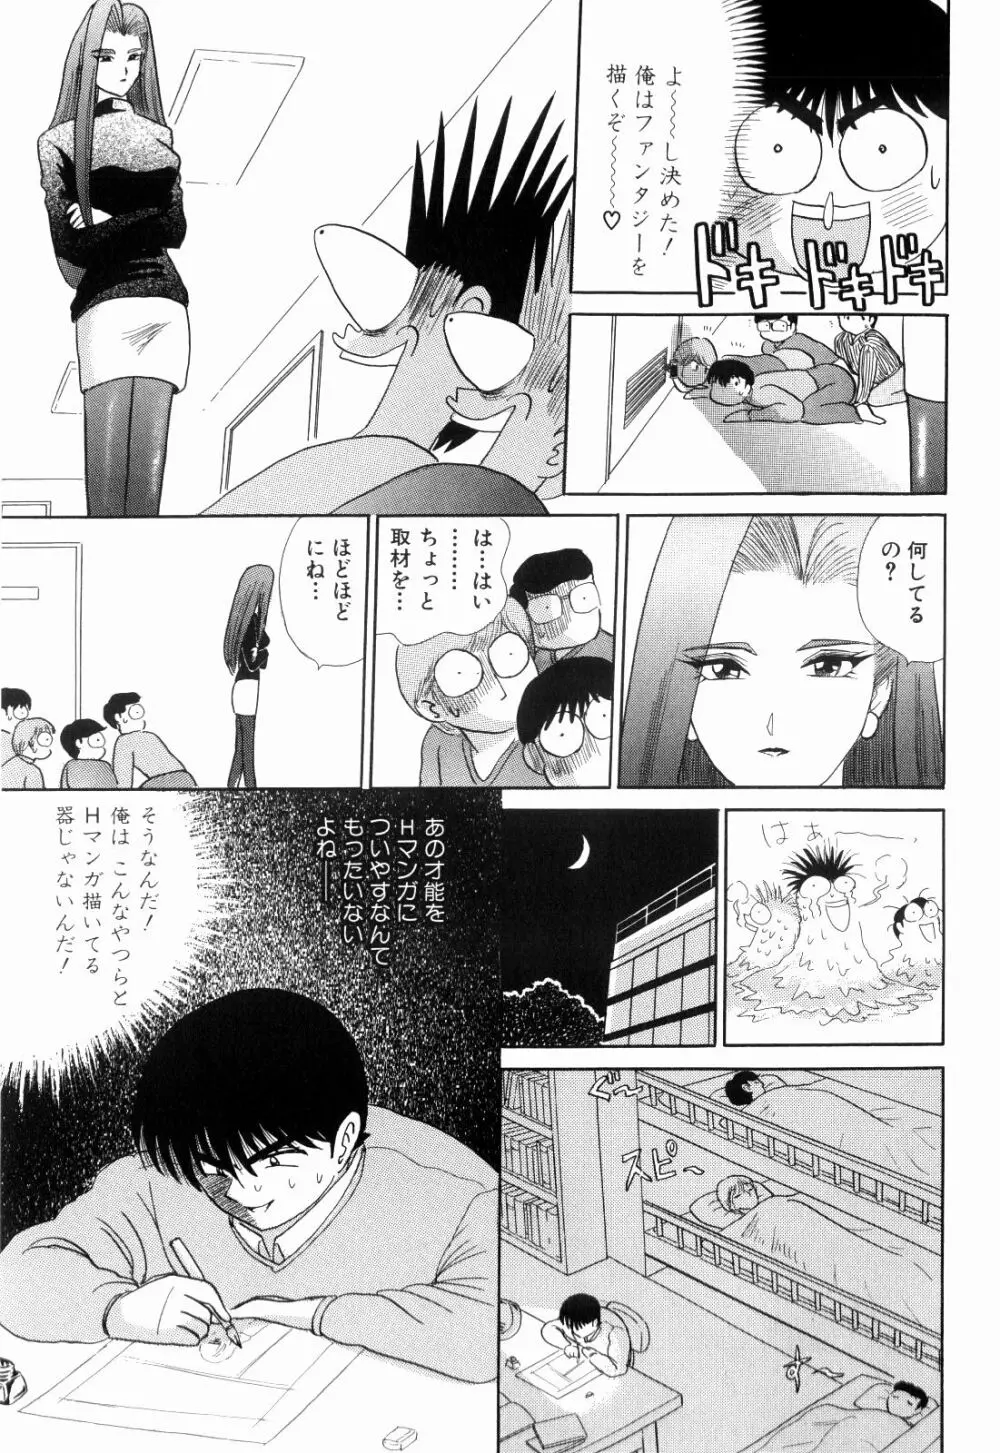 Kenjiro Kakimoto – Futari Kurashi 12 75ページ